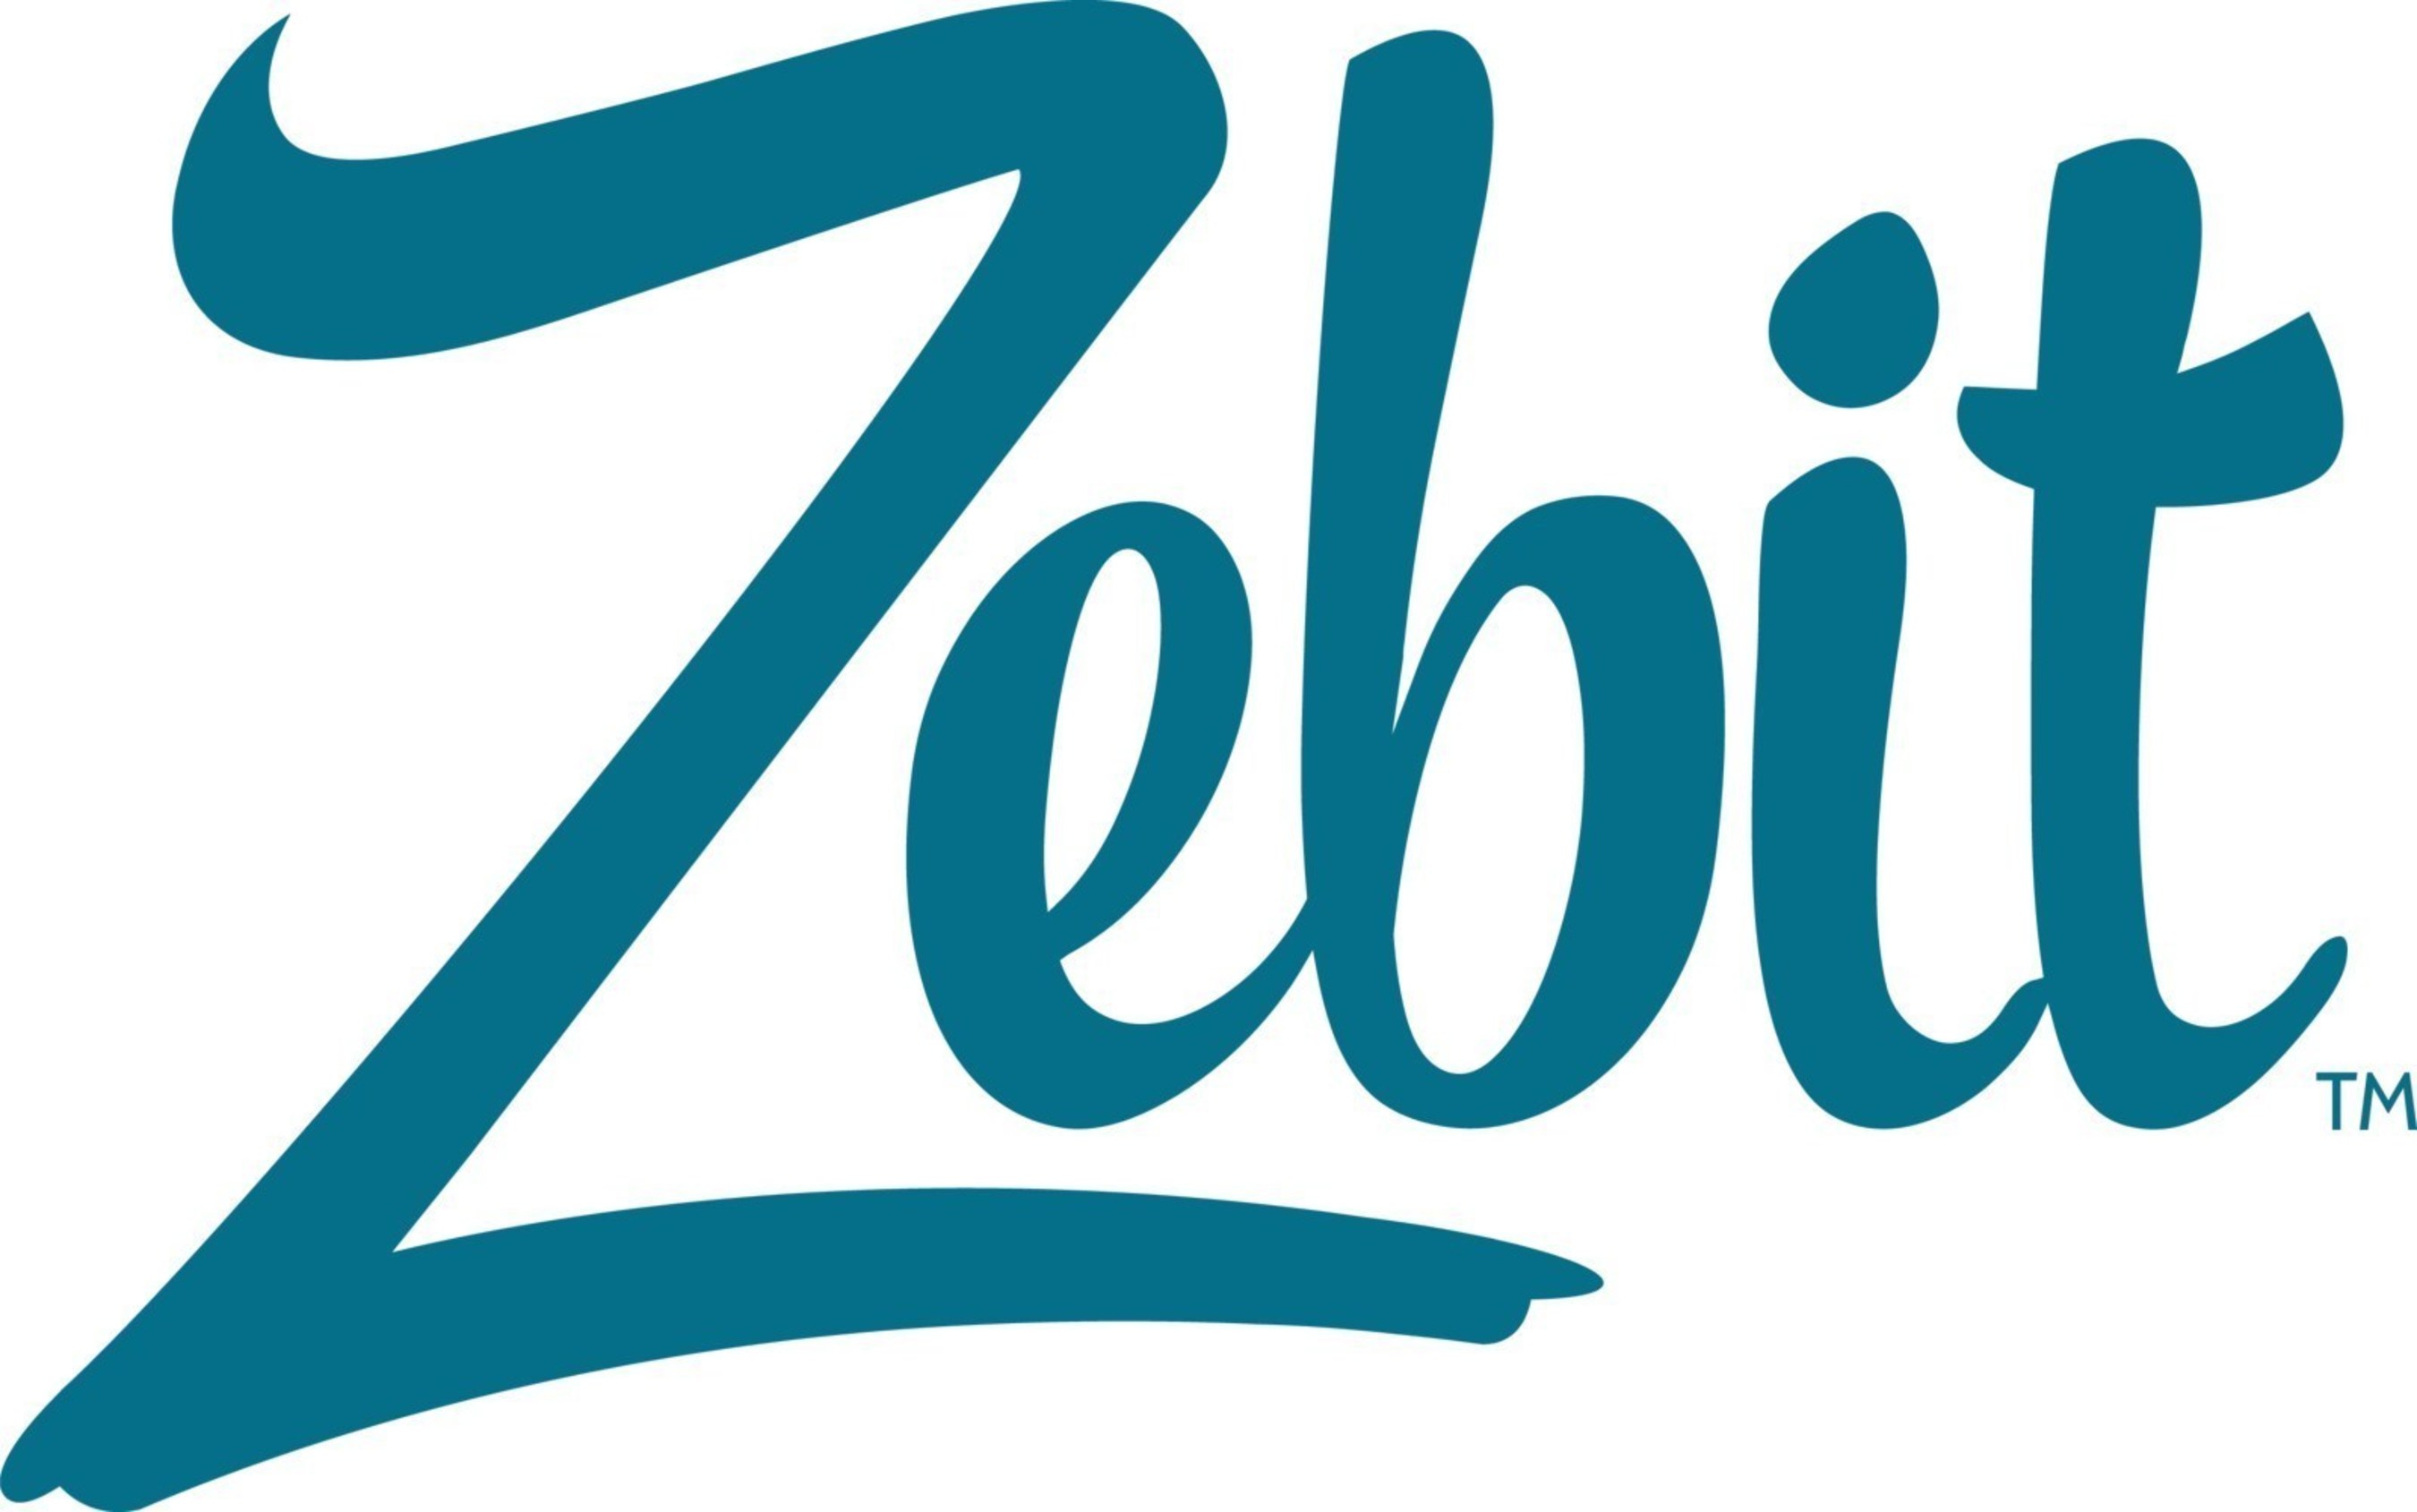 Zebit Logo (PRNewsFoto/Zebit)